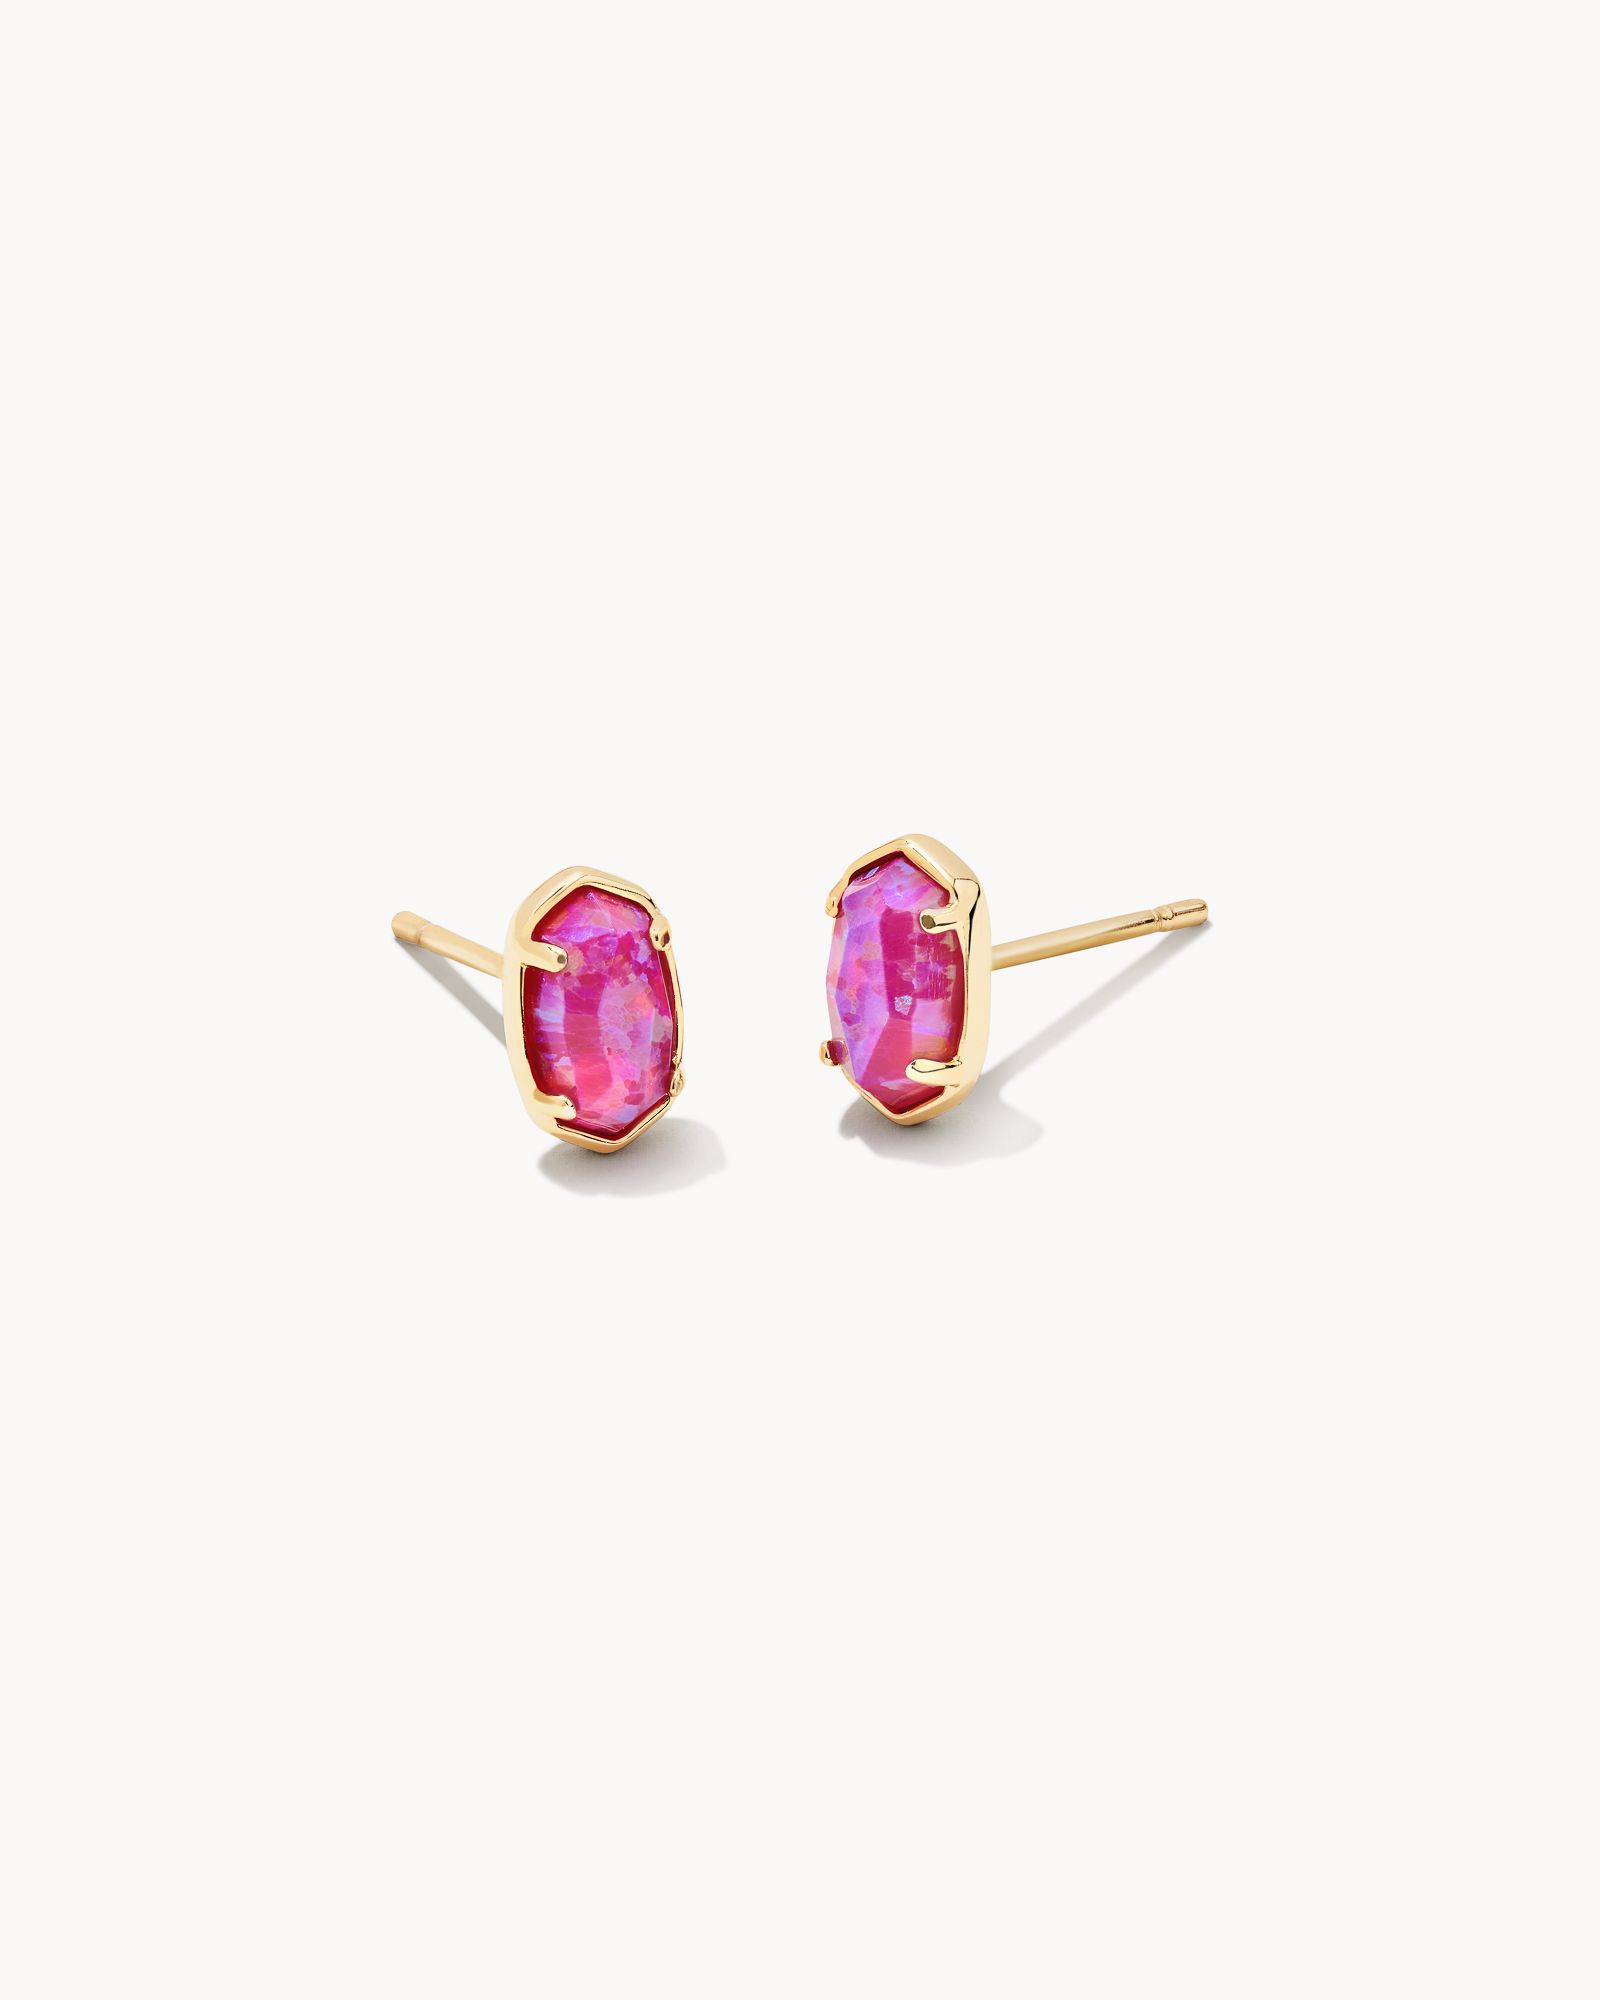 Emilie Gold Stud Earrings in Plum Kyocera Opal | Kendra Scott